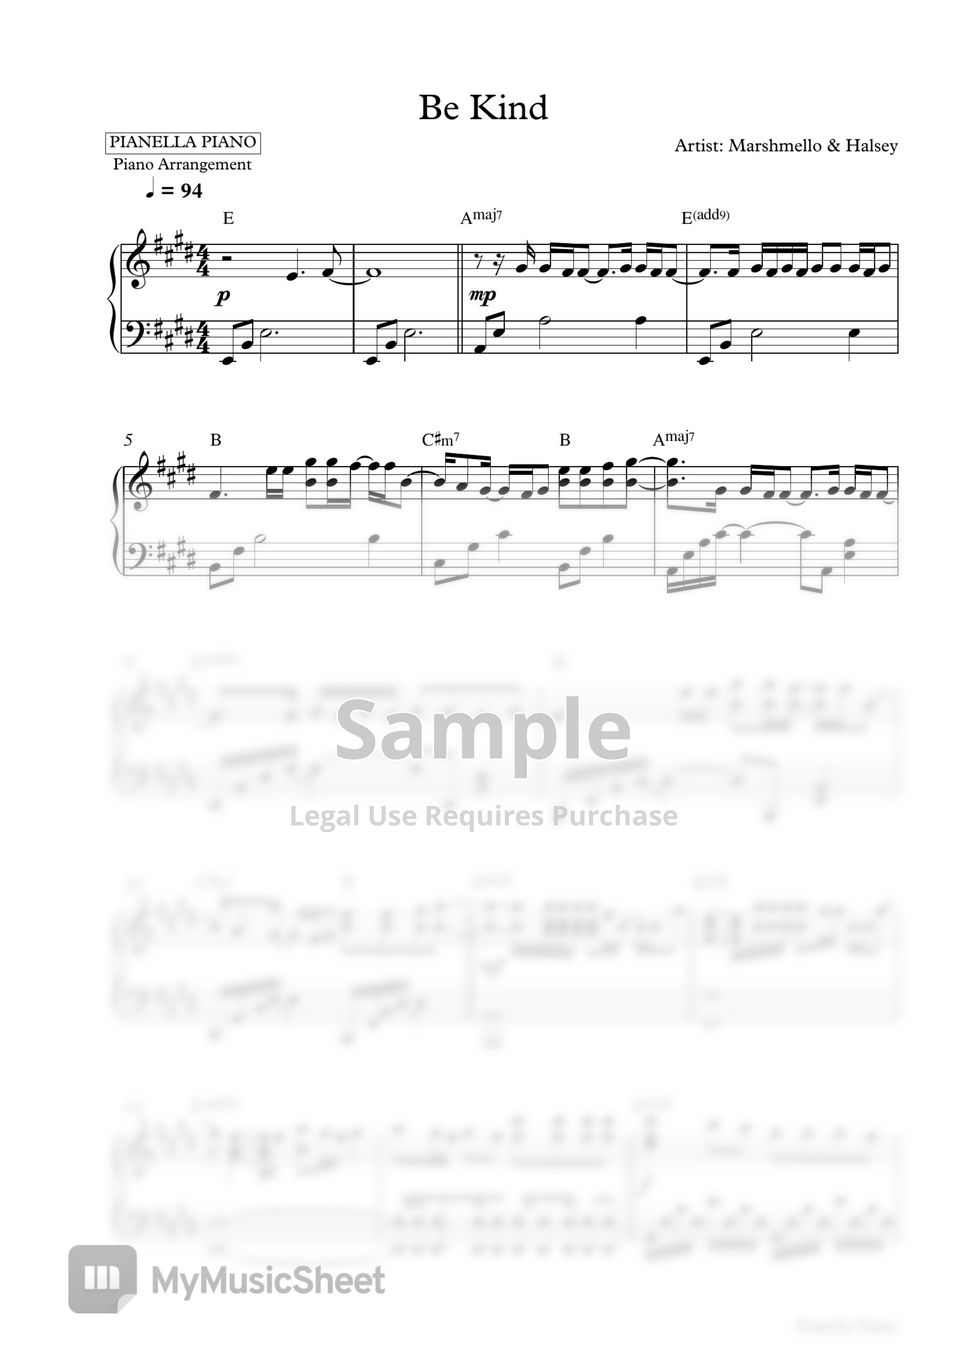 Marshmello & Halsey - Be Kind (Piano Sheet) by Pianella Piano